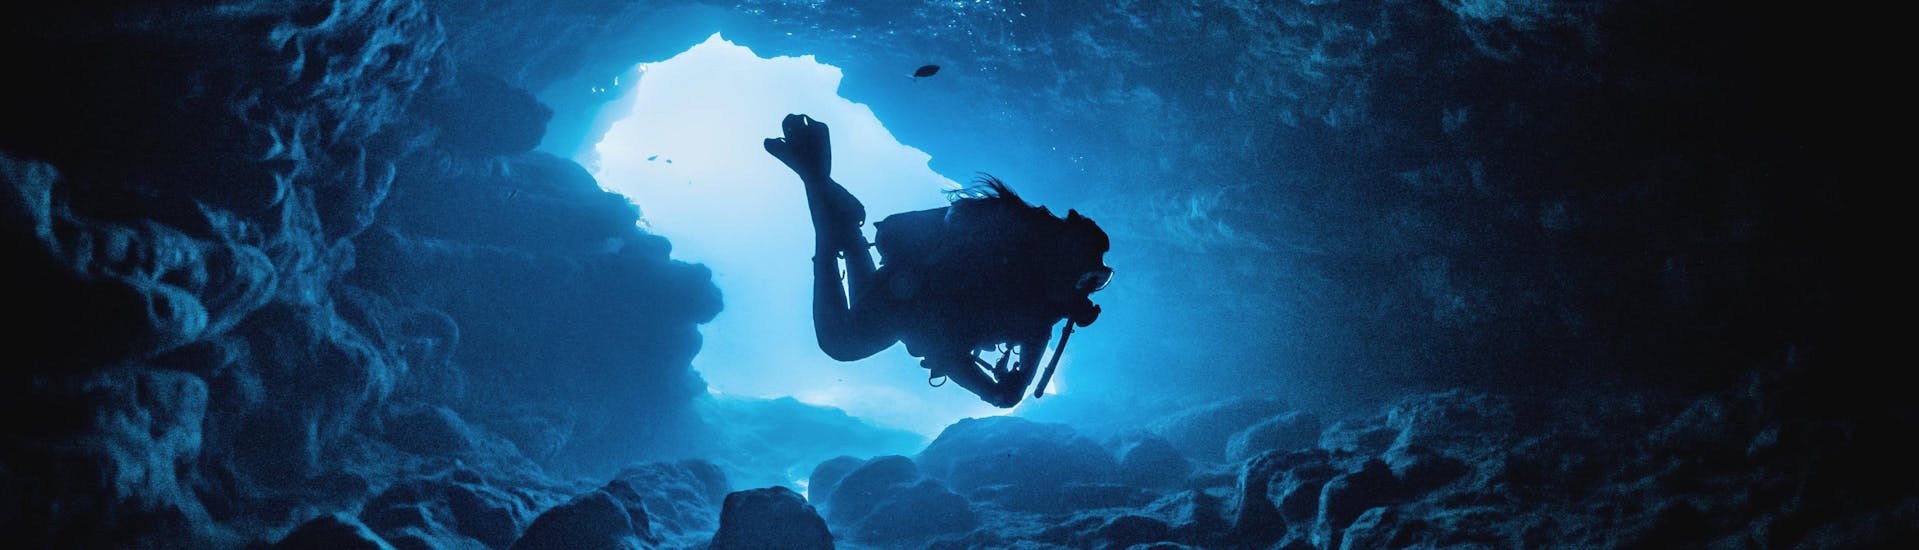 Un buceador explora una de las muchas cuevas que rodean la costa de Malta, uno de los destinos de buceo más famosos de Europa.